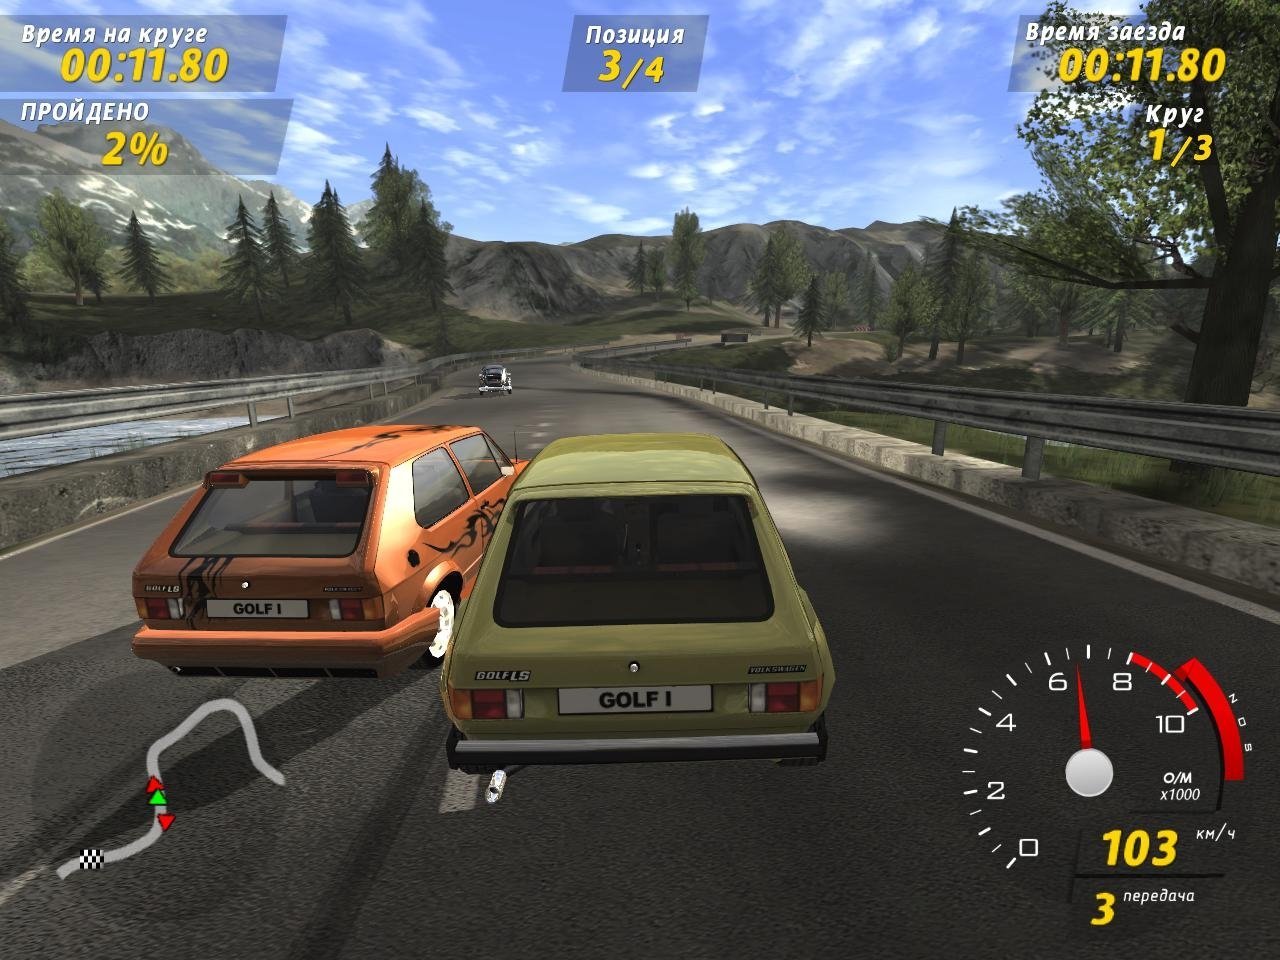 Играть и маш 1. Игра Volkswagen GTI Racing. GTI Racing Volkswagen Golf Racer. GTI Racing игра 2006. Русские гонки.